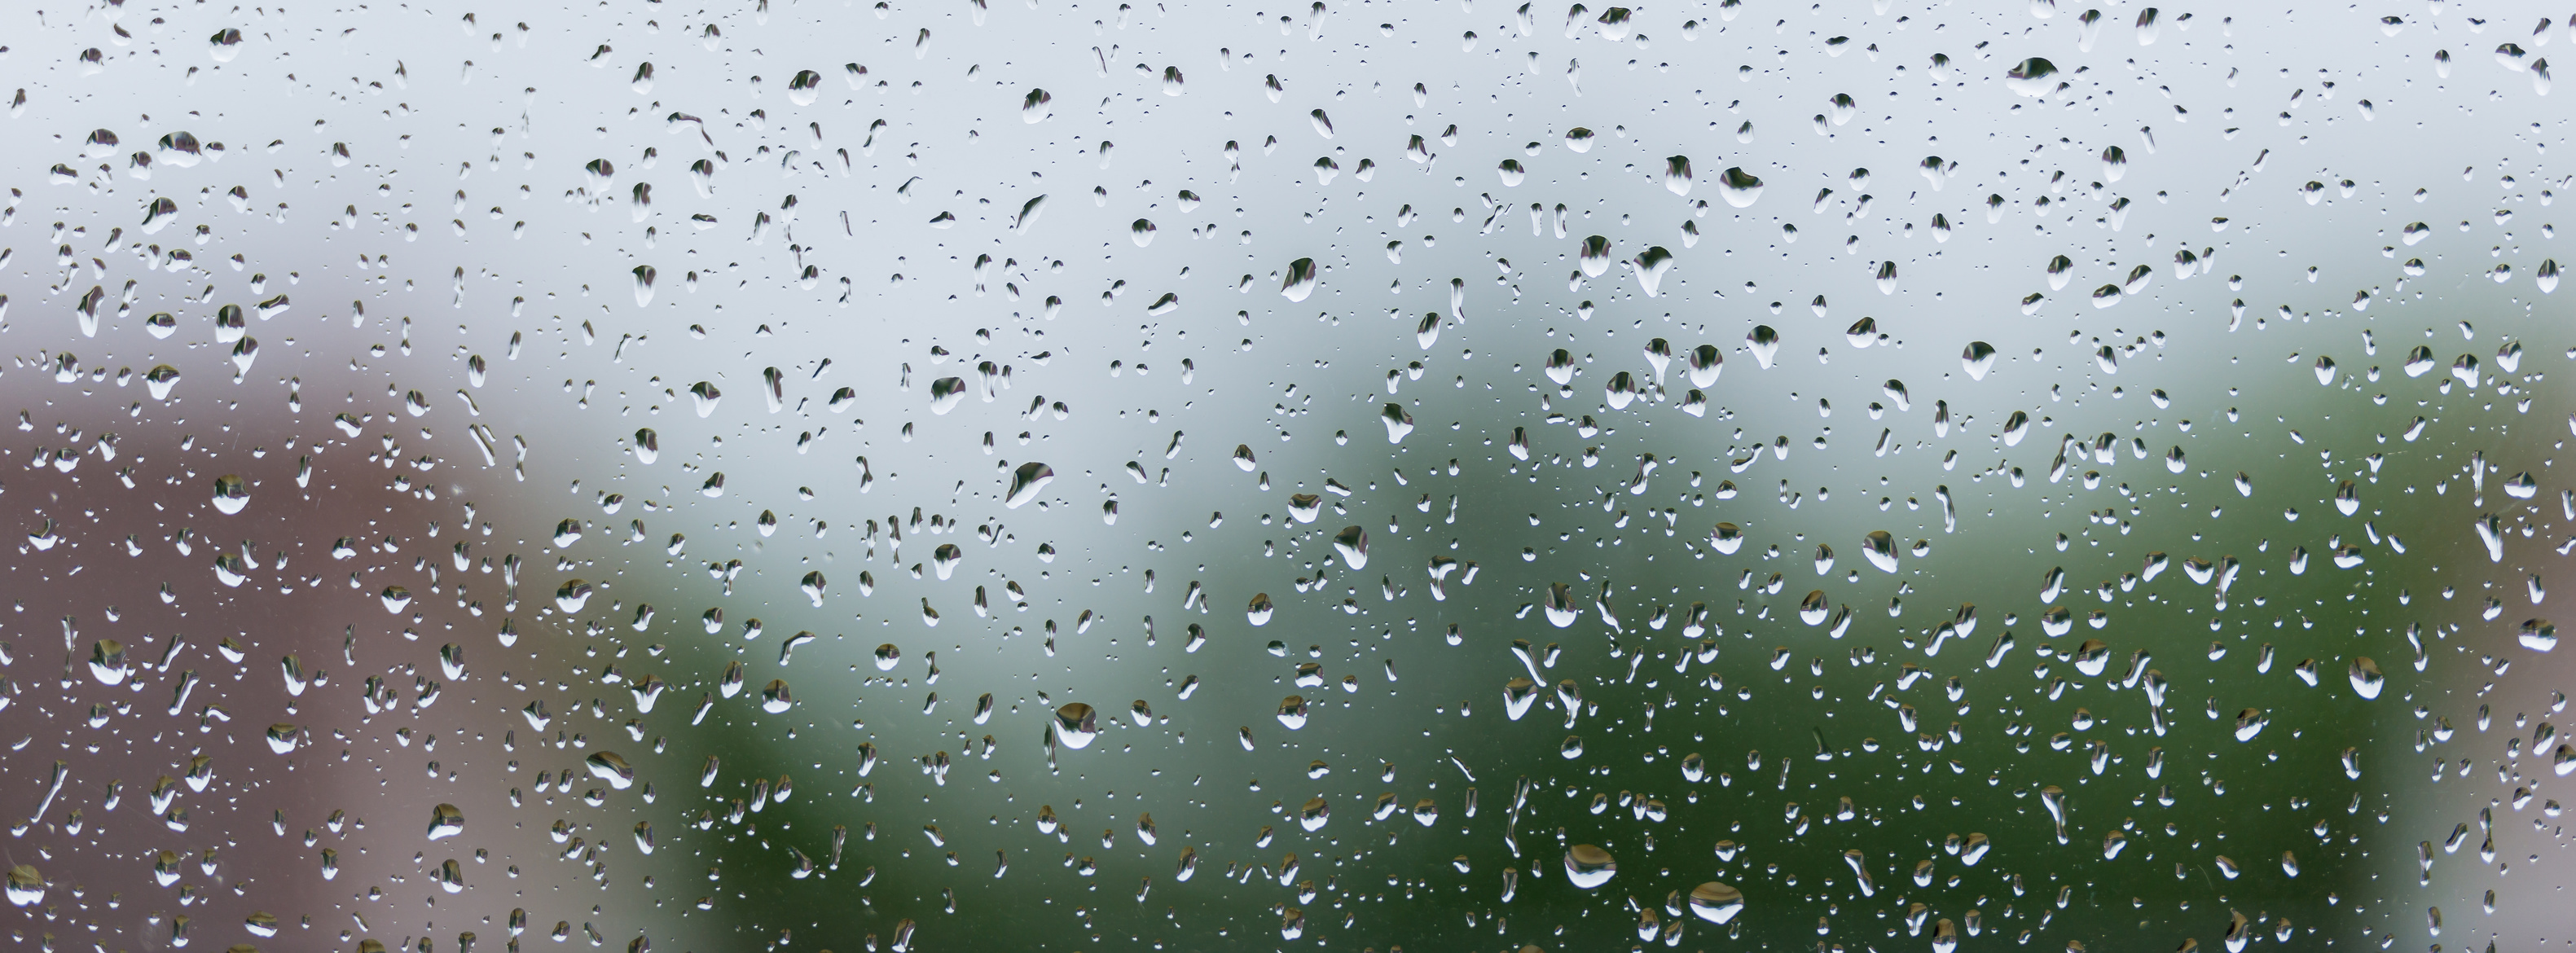 Regentropfen an Glasscheibe Starkregen draußen - Starkregenprävention